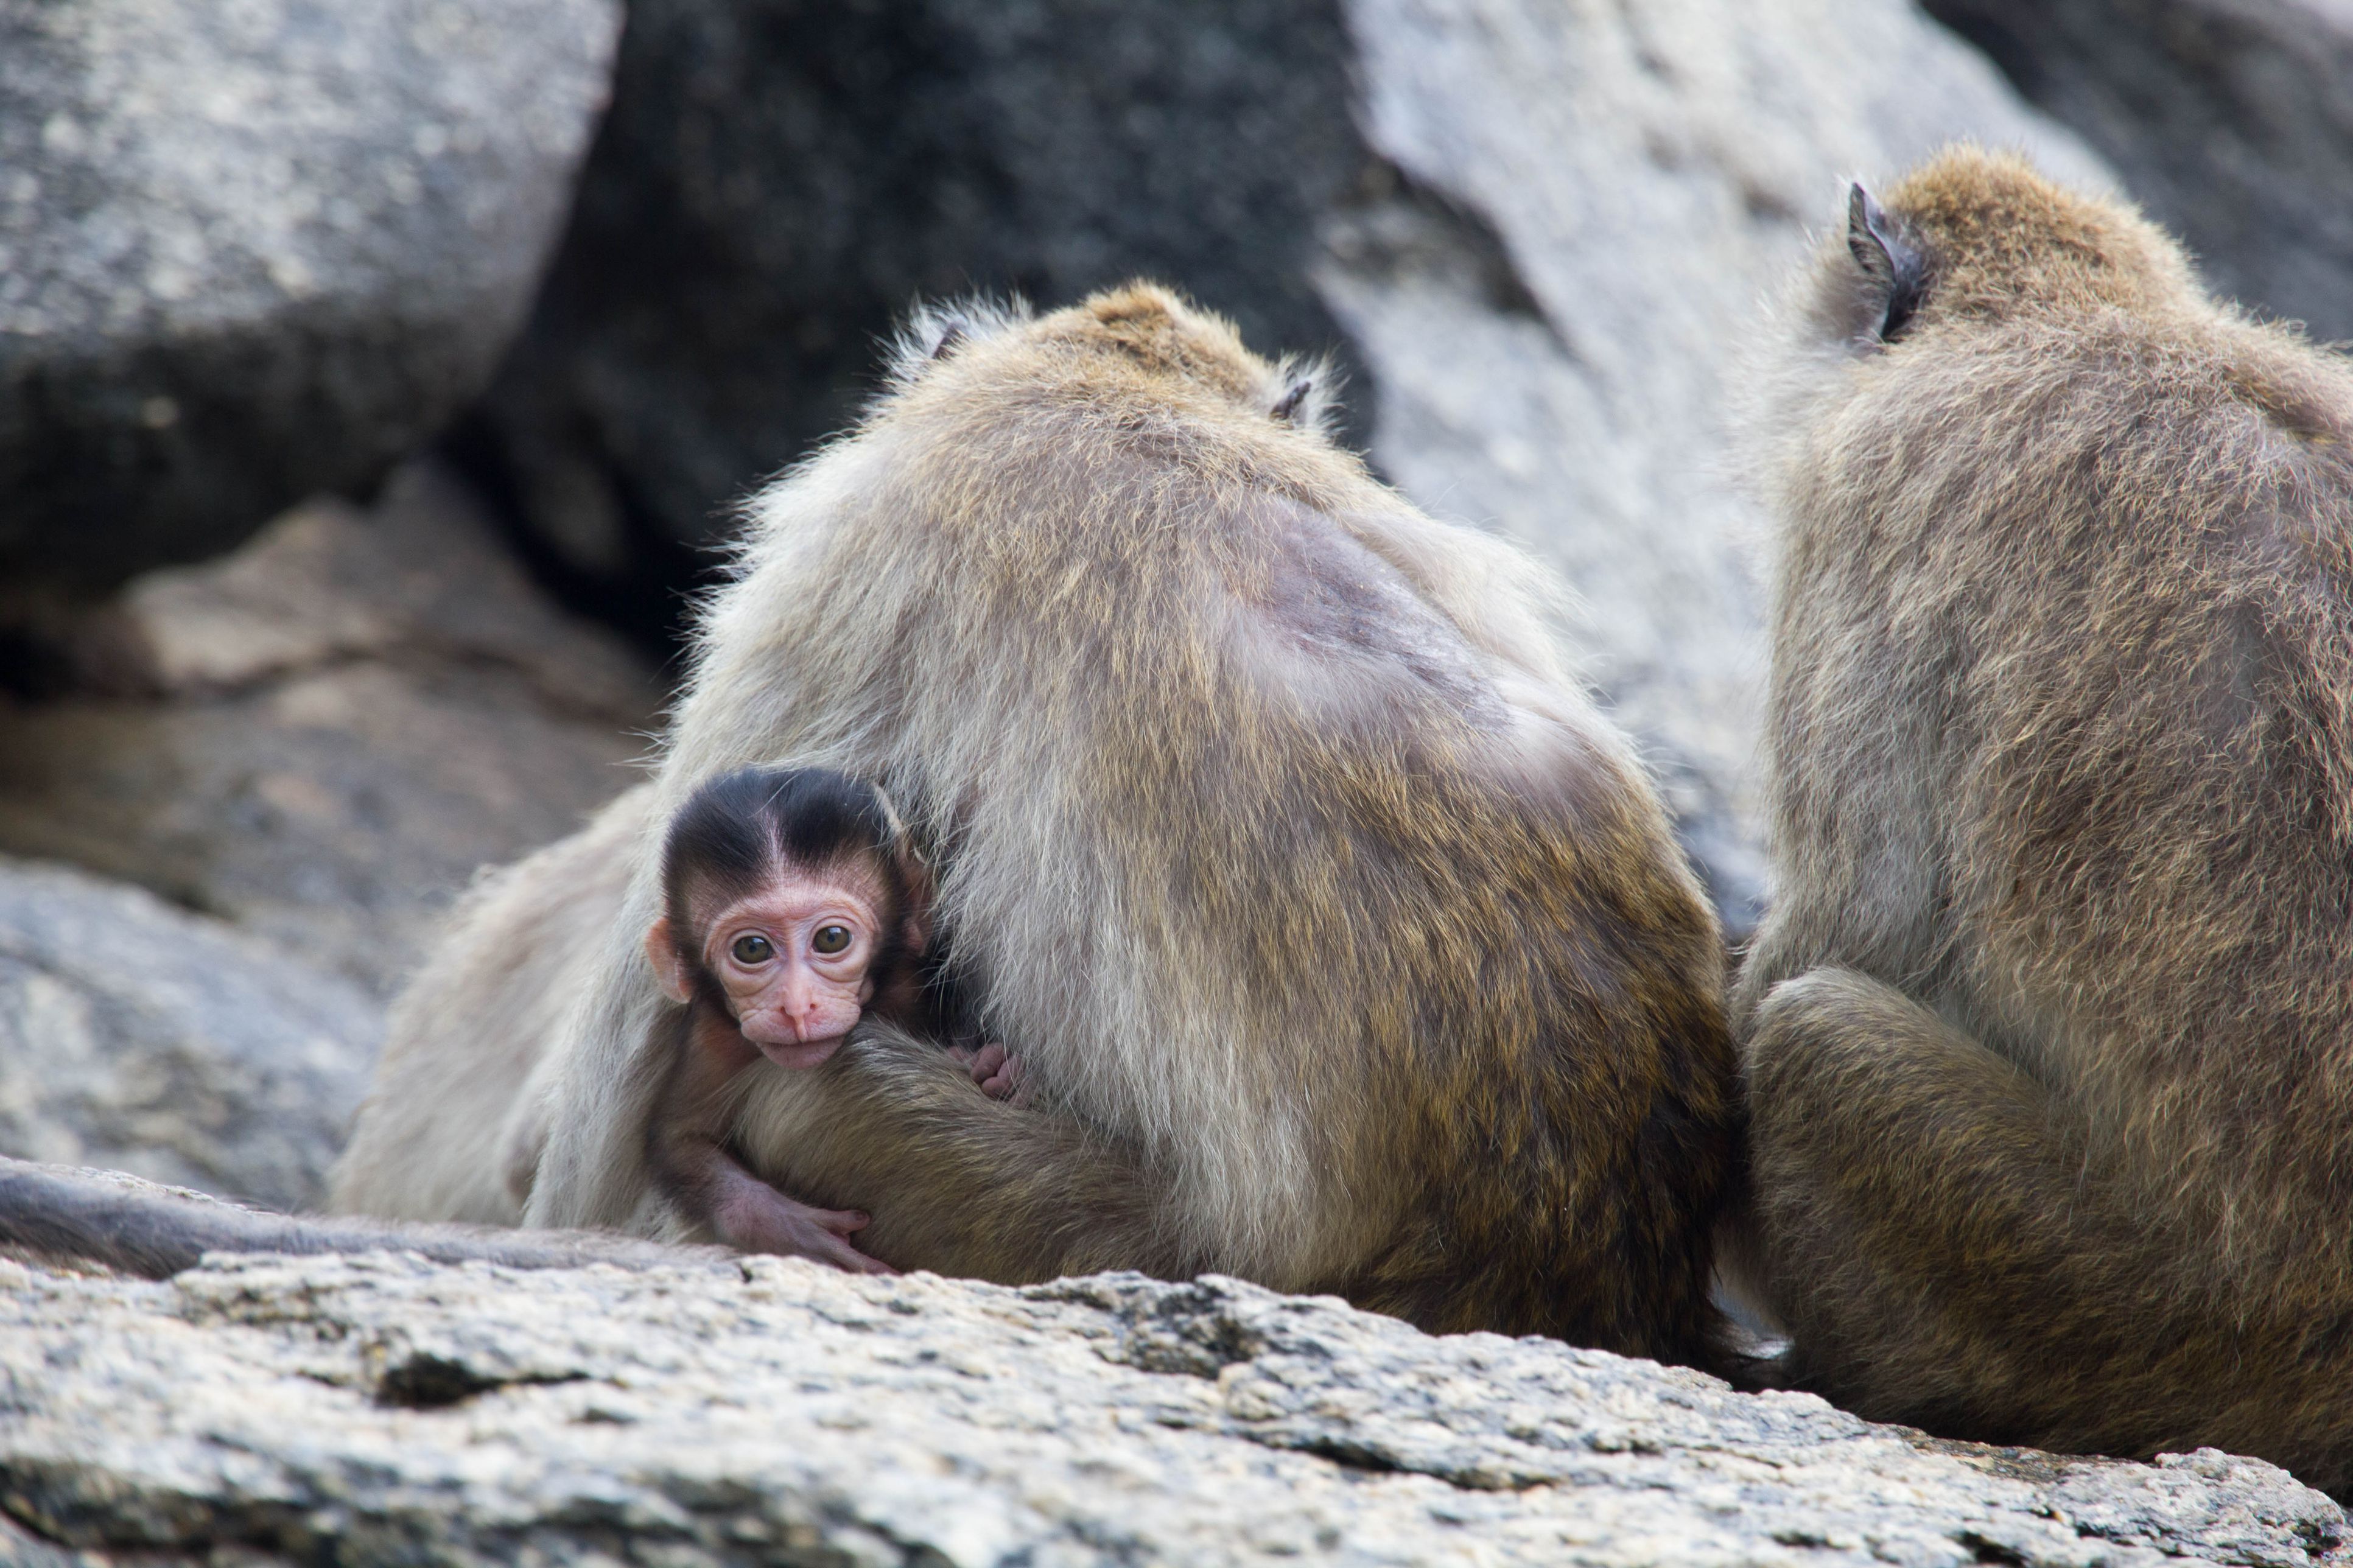 Wild Monkeys in Thailand: Cute but Dangerous